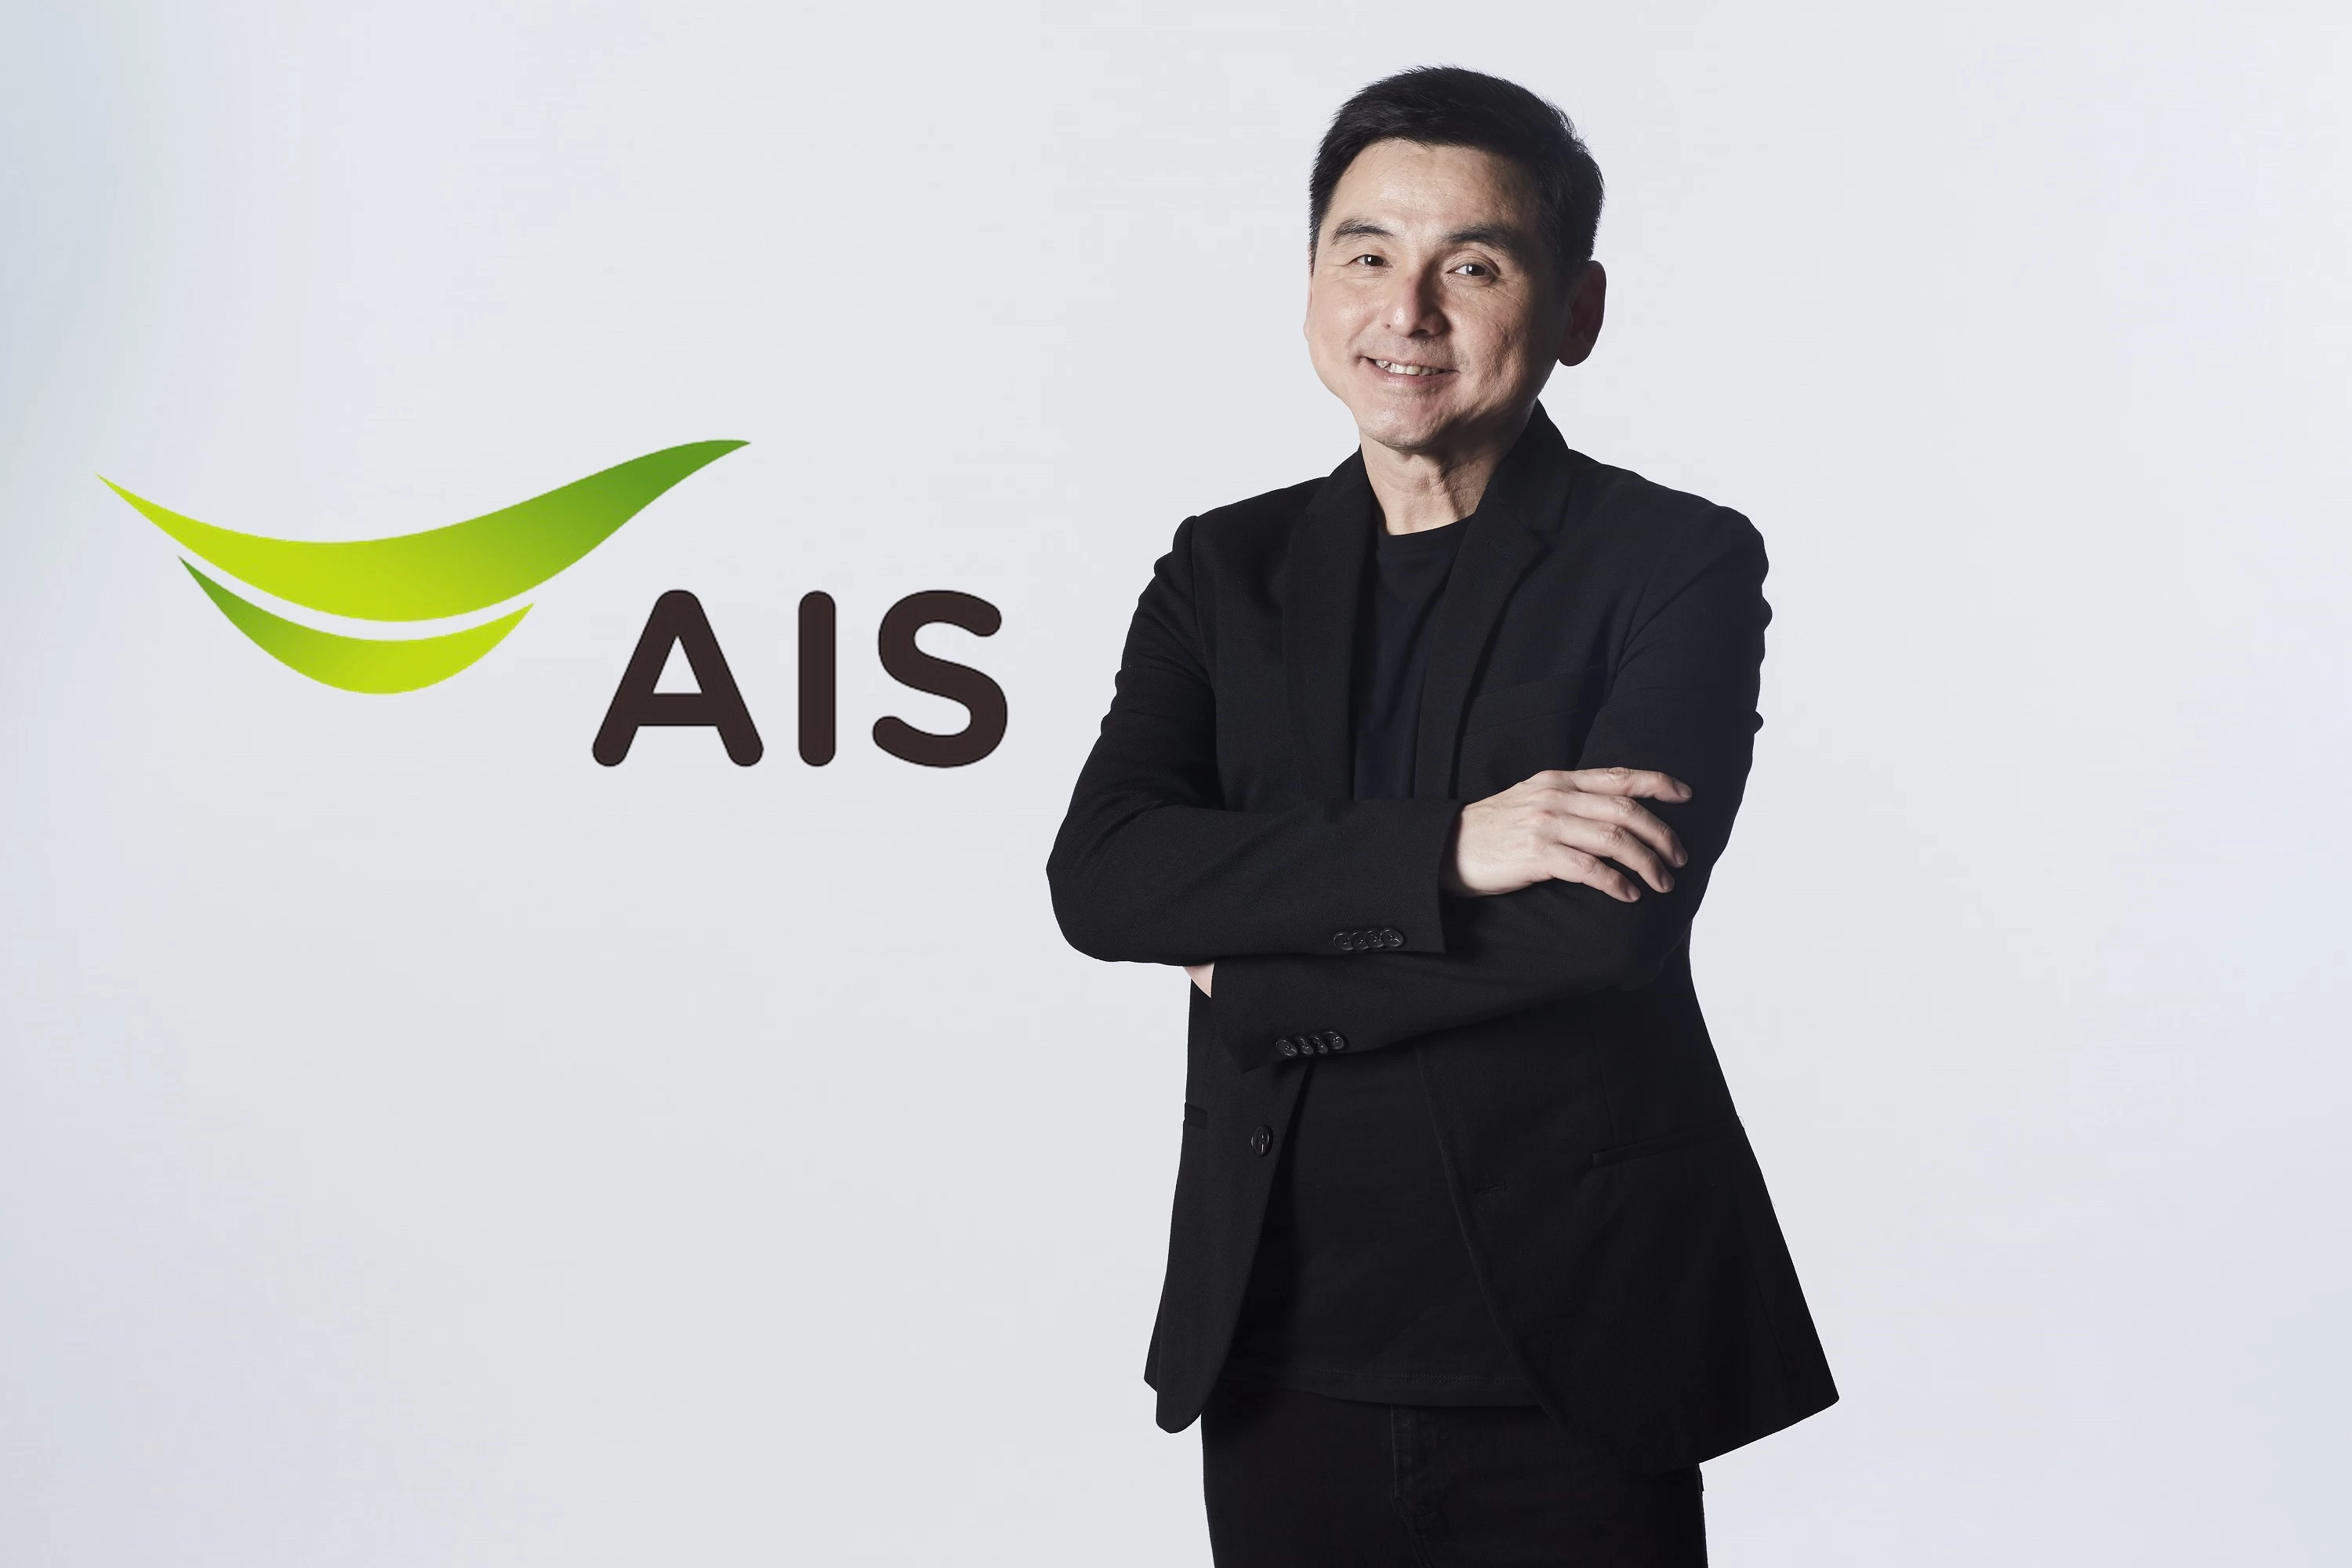 190914 Pic Mr.Somchai Lertsutiwong CEO AIS 1 | AIS | AIS ติดอันดับดัชนีความยั่งยืนดาวโจนส์ DJSI ปี 2562 ทั้งในกลุ่มดัชนีโลกและดัชนีตลาดเกิดใหม่